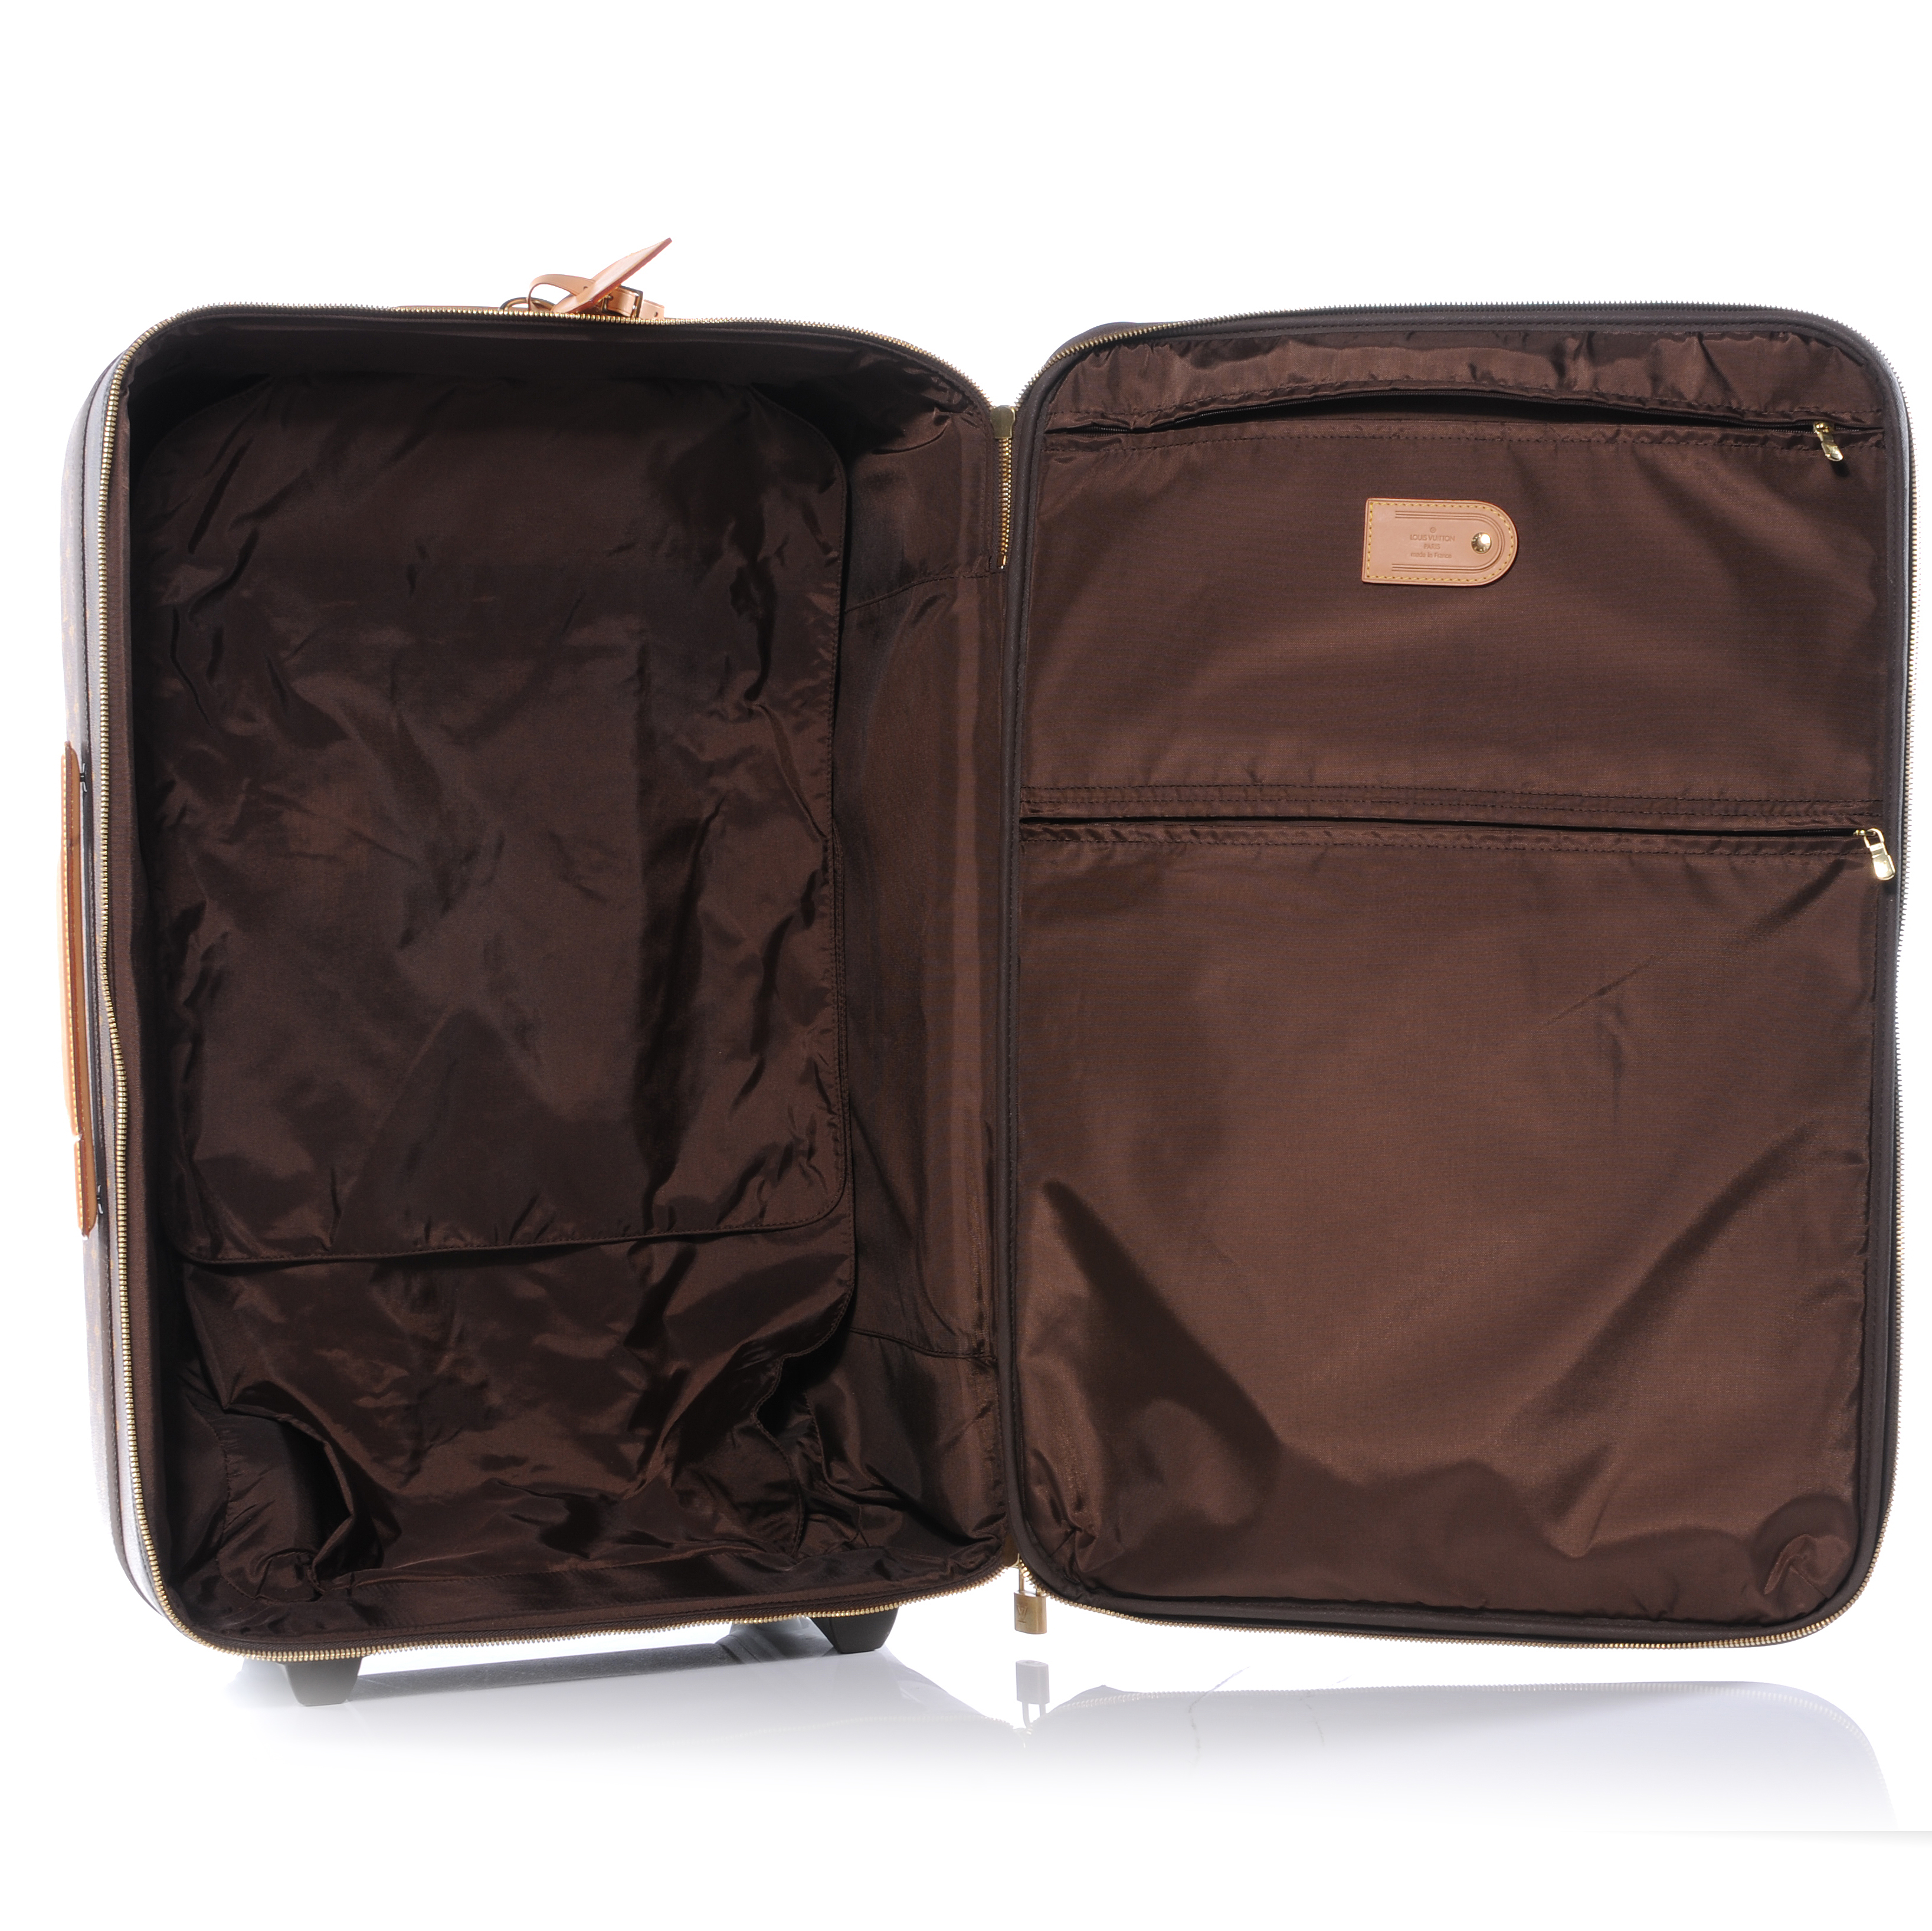 Travel bag Pegase 70 Louis Vuitton (Genuine) - PS Auction - We